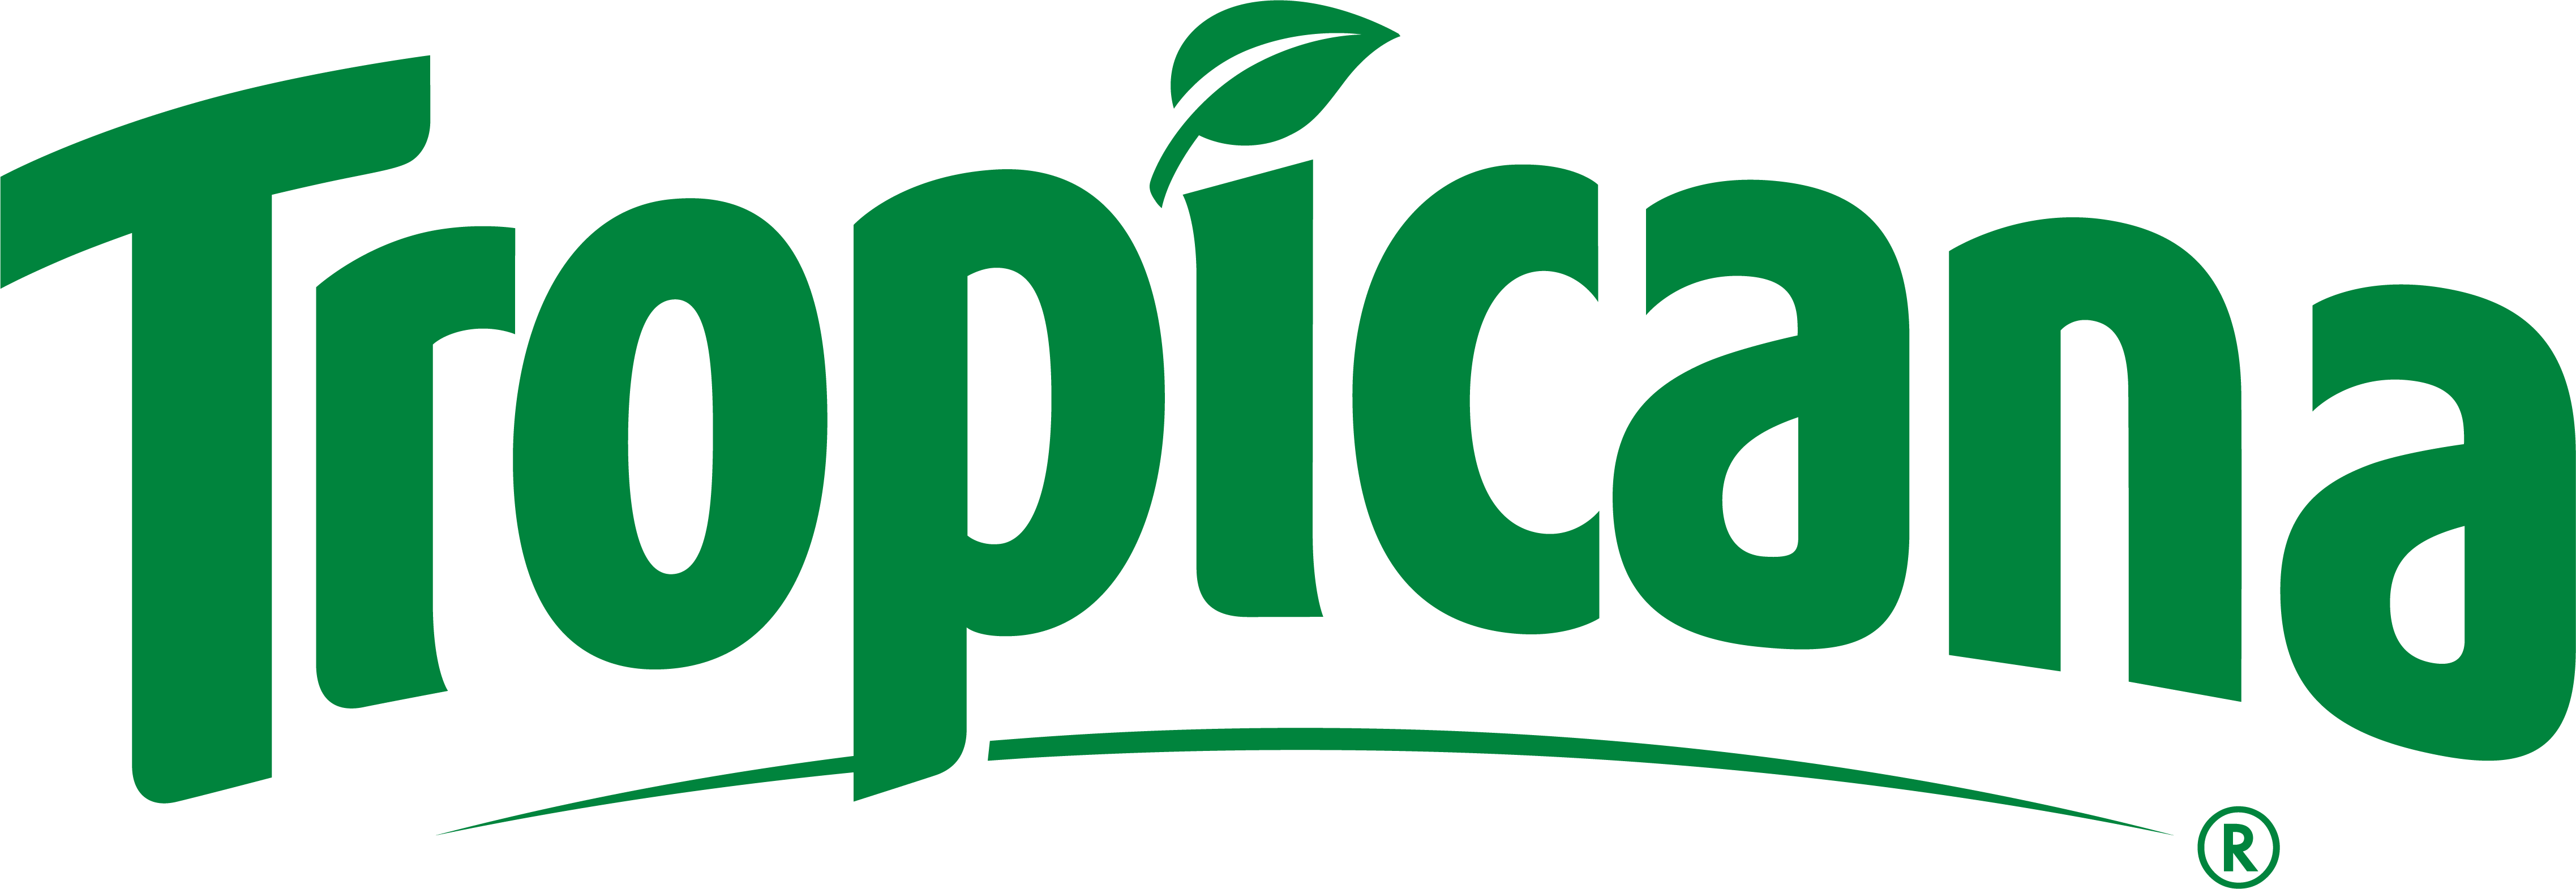 Tropicana Logo